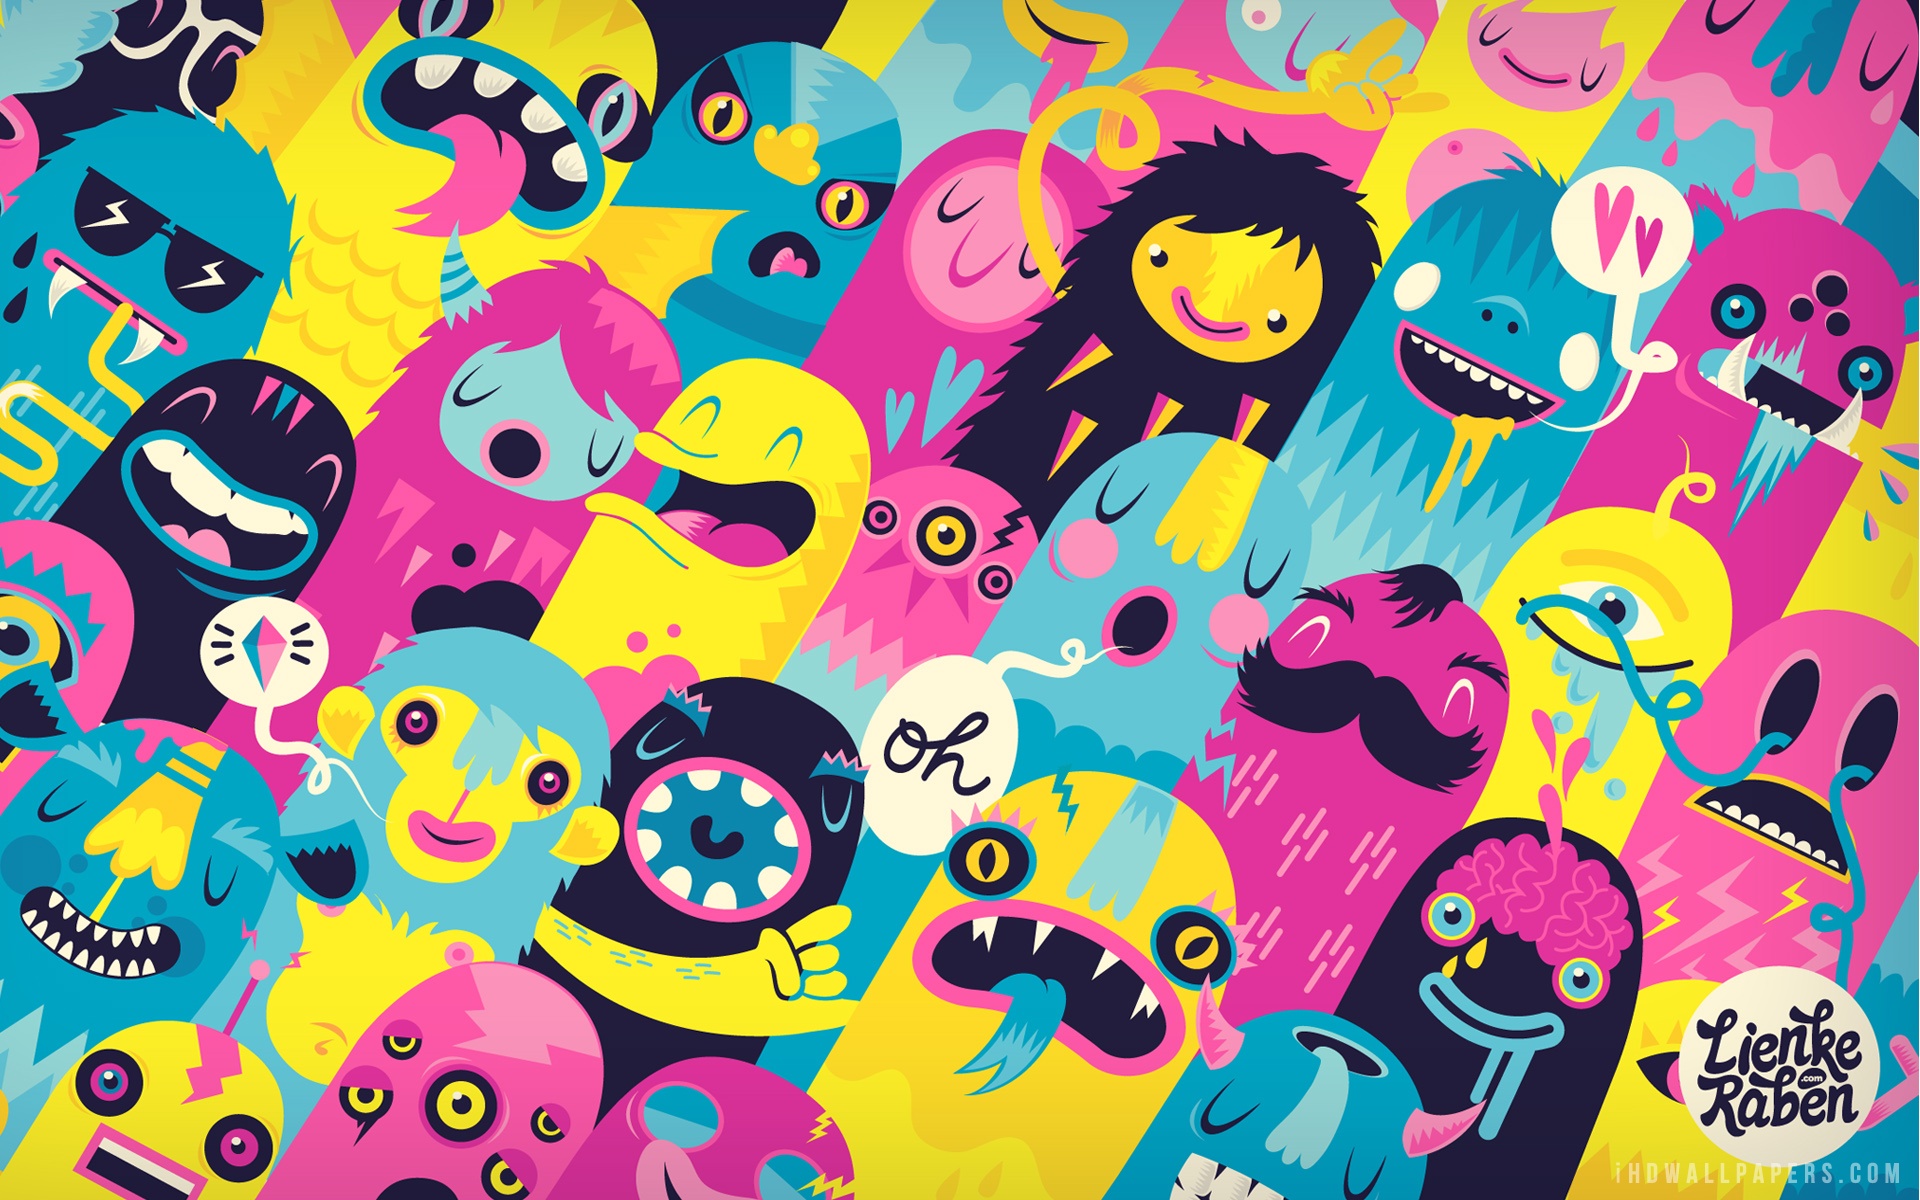 Monsters Art wallpaper: Nếu bạn là một fan hâm mộ của những con quái vật và nghệ thuật, Hình nền Monsters Art là sự lựa chọn hoàn hảo. Những hình ảnh sắc nét và phong cách độc đáo này đem đến một cái nhìn mới lạ và thú vị cho điện thoại của bạn. Hãy khám phá bộ sưu tập này ngay hôm nay.